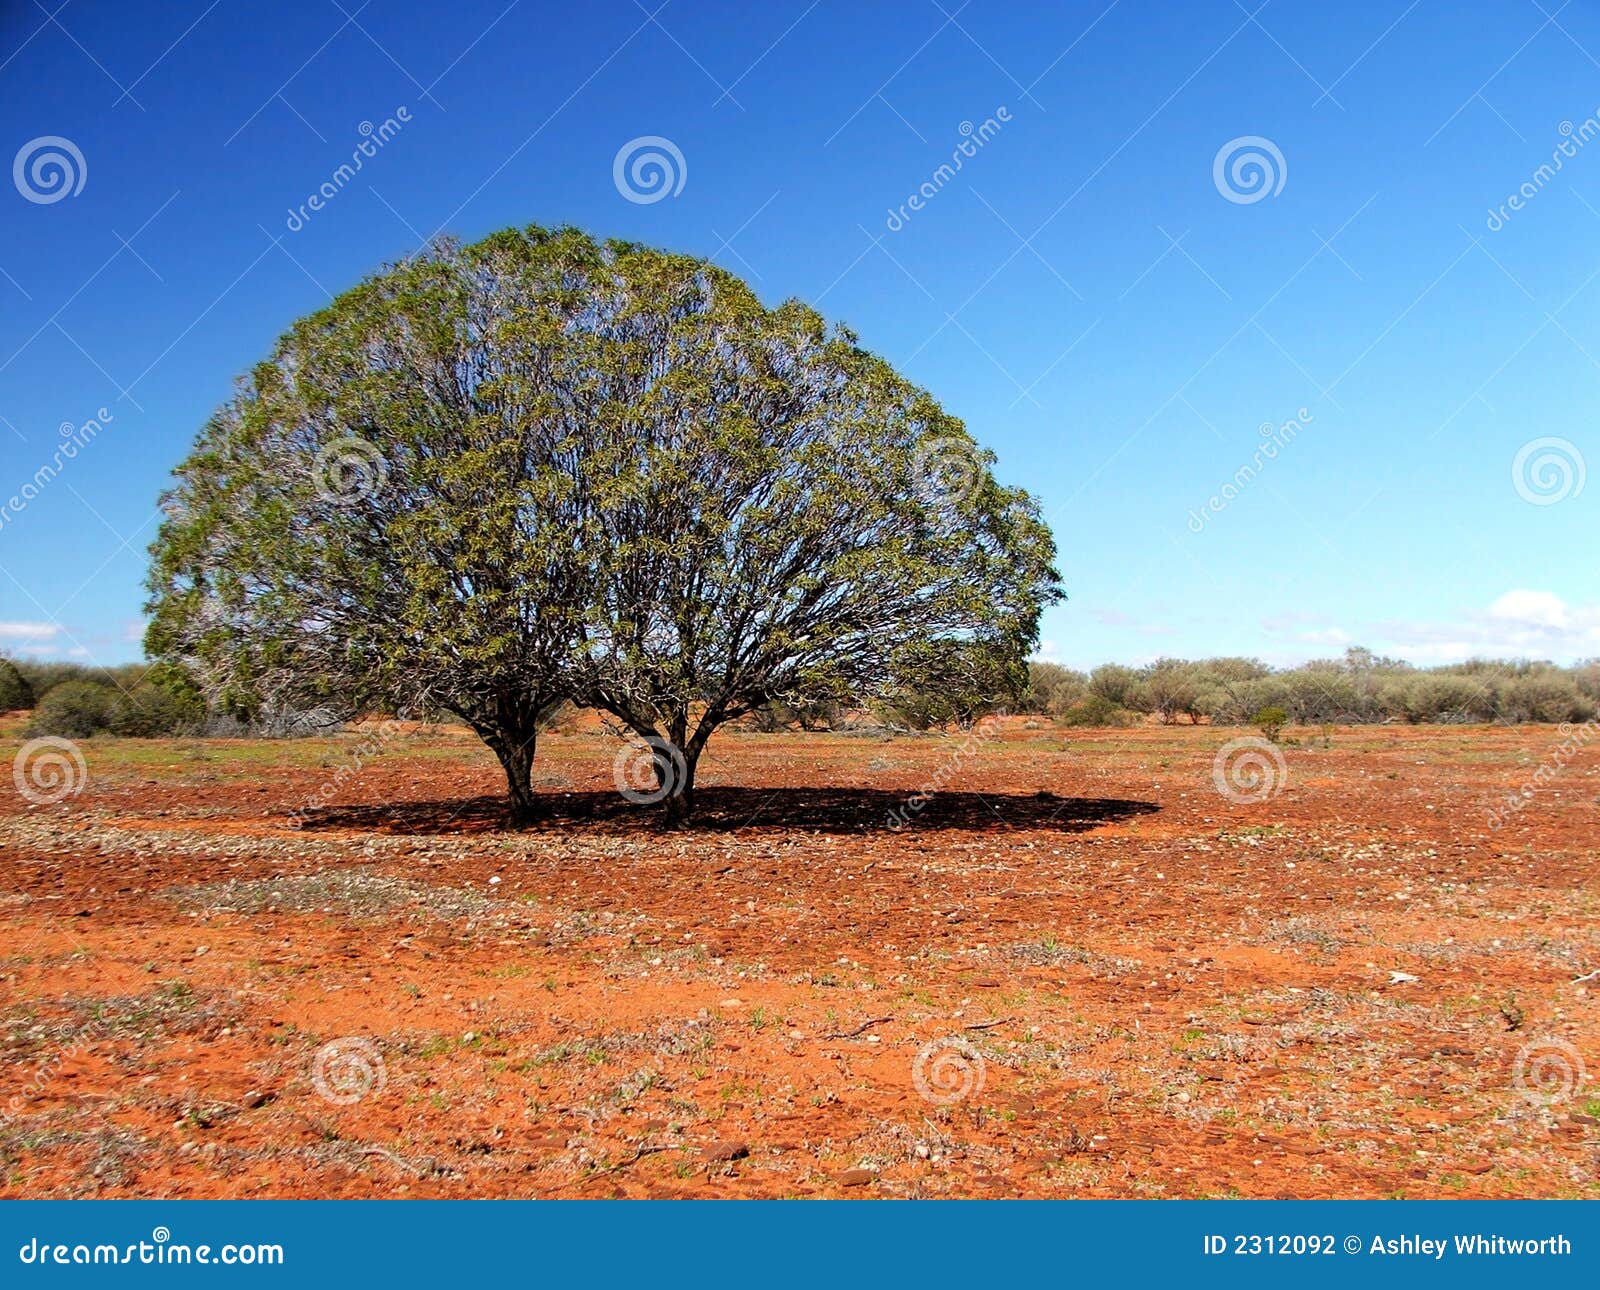 twin trees on stony plain